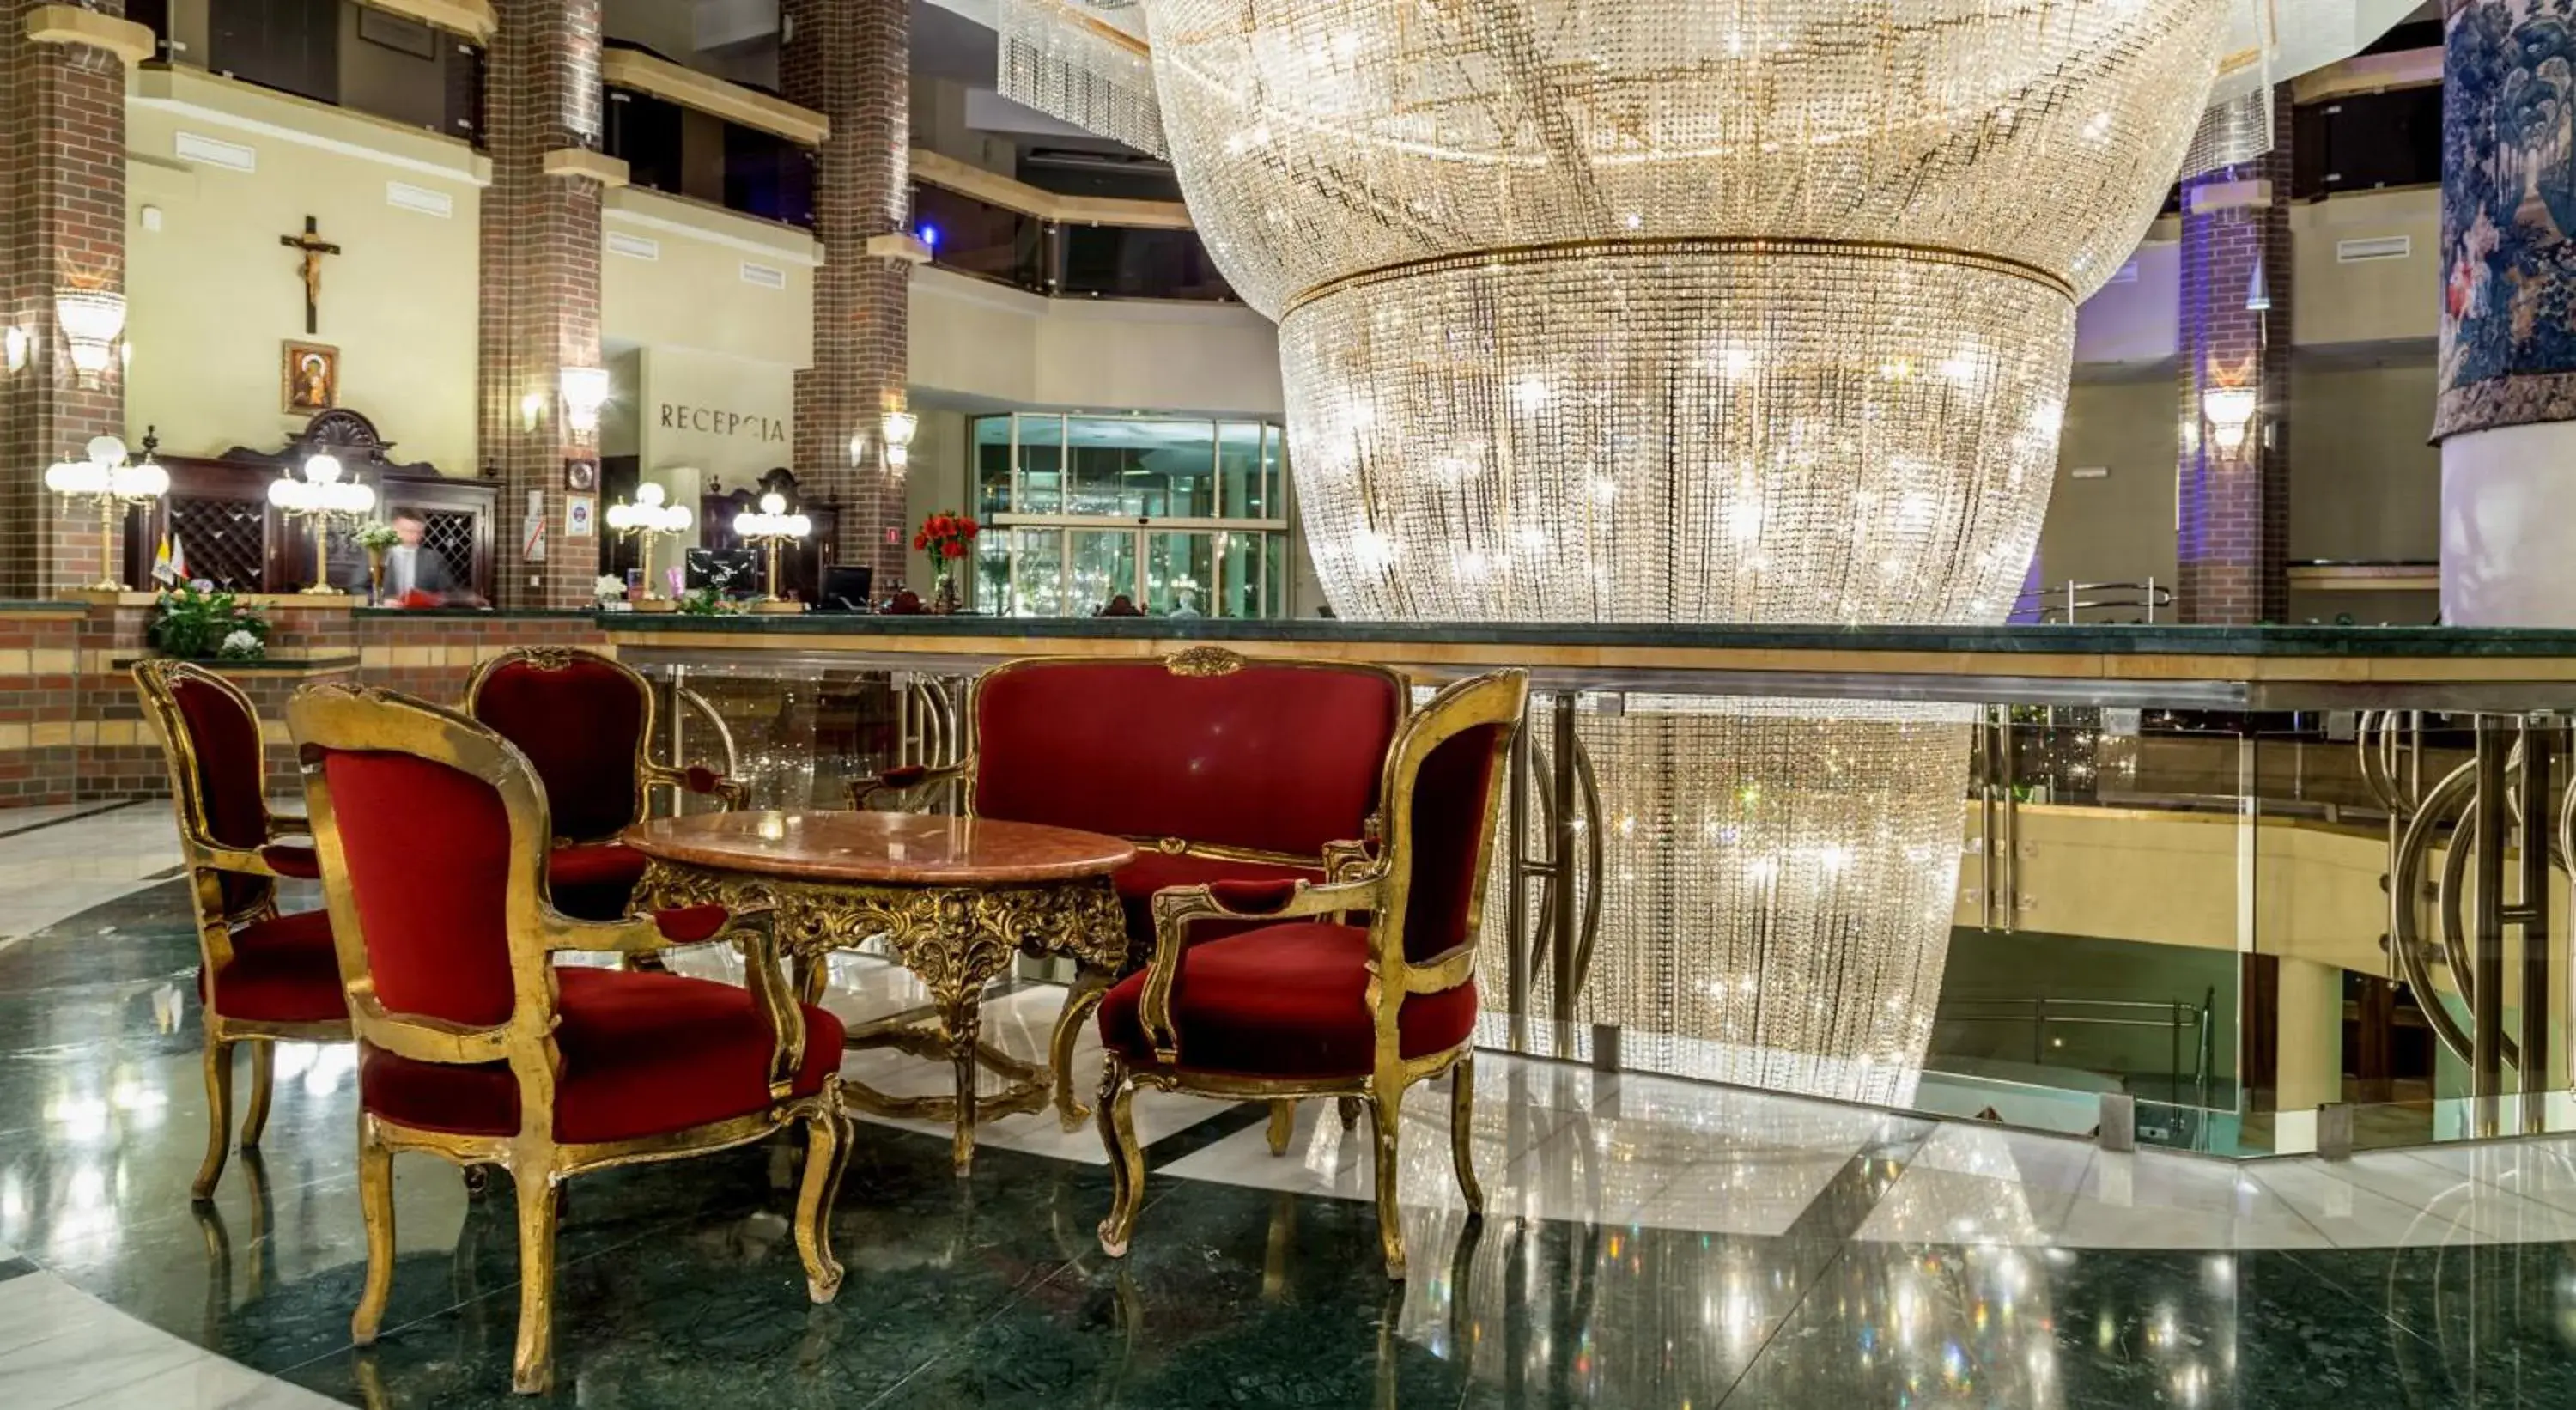 Lobby or reception in Hotel im. Jana Pawła II